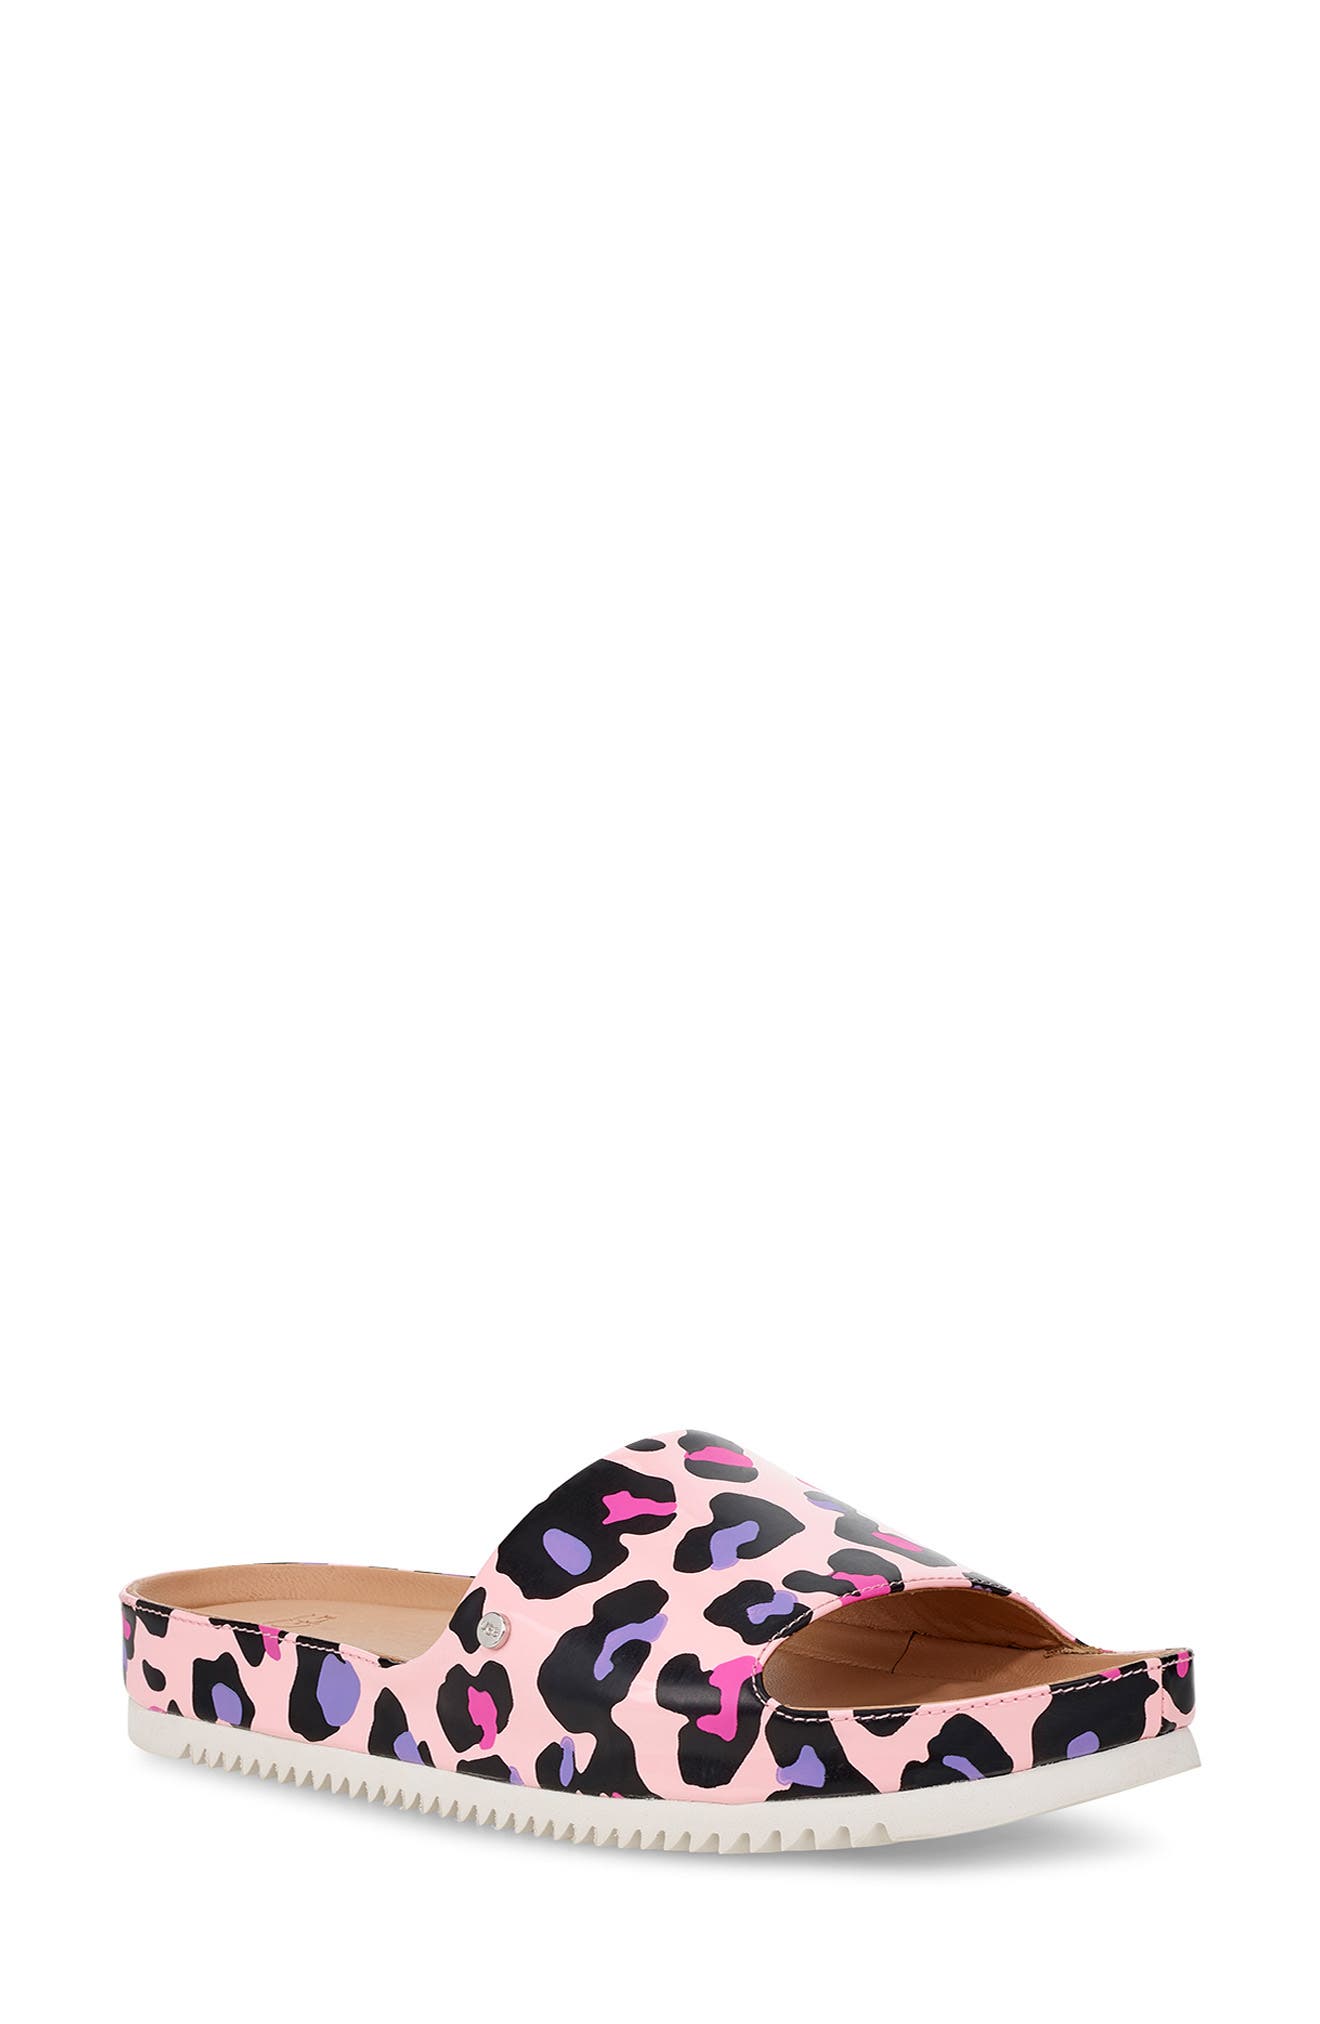 leopard ugg sandals